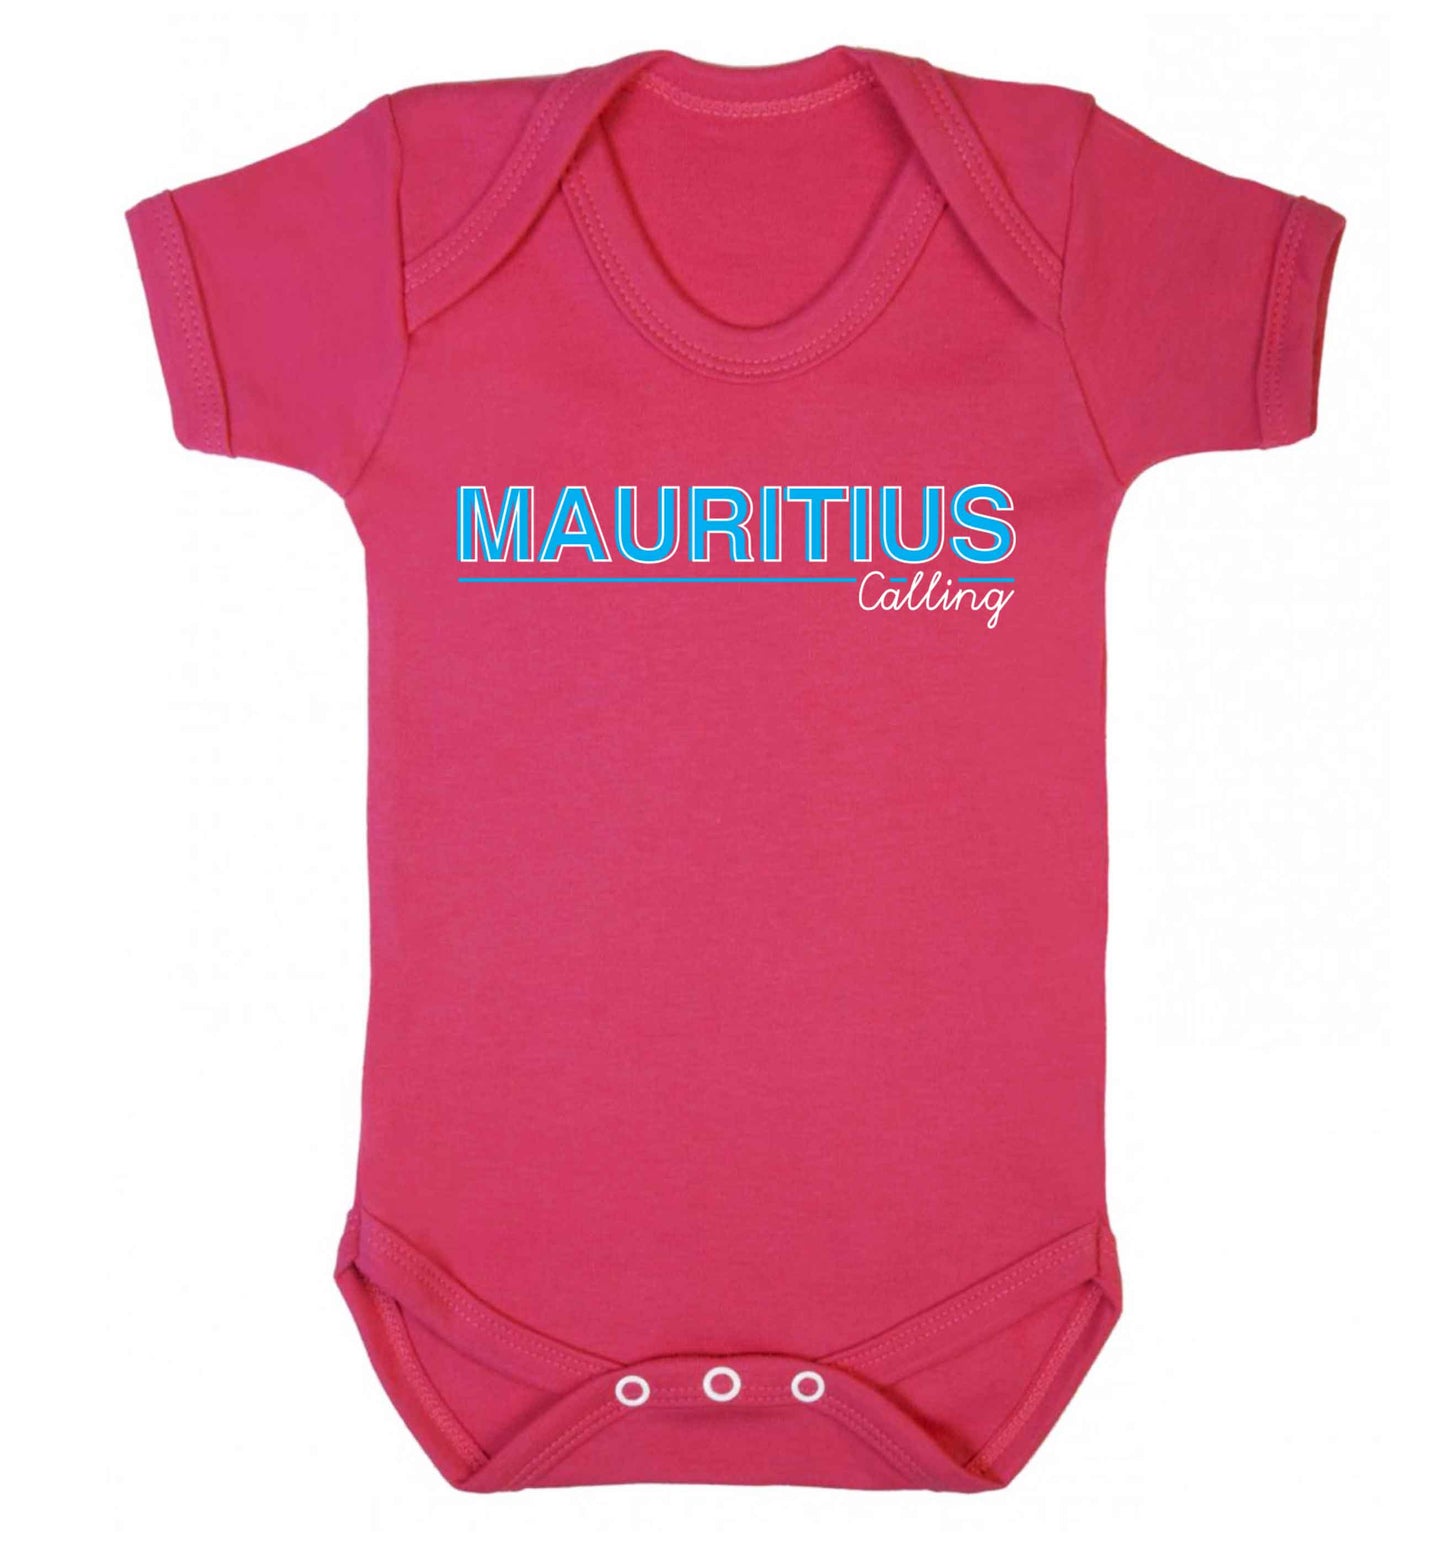 Mauritius calling Baby Vest dark pink 18-24 months